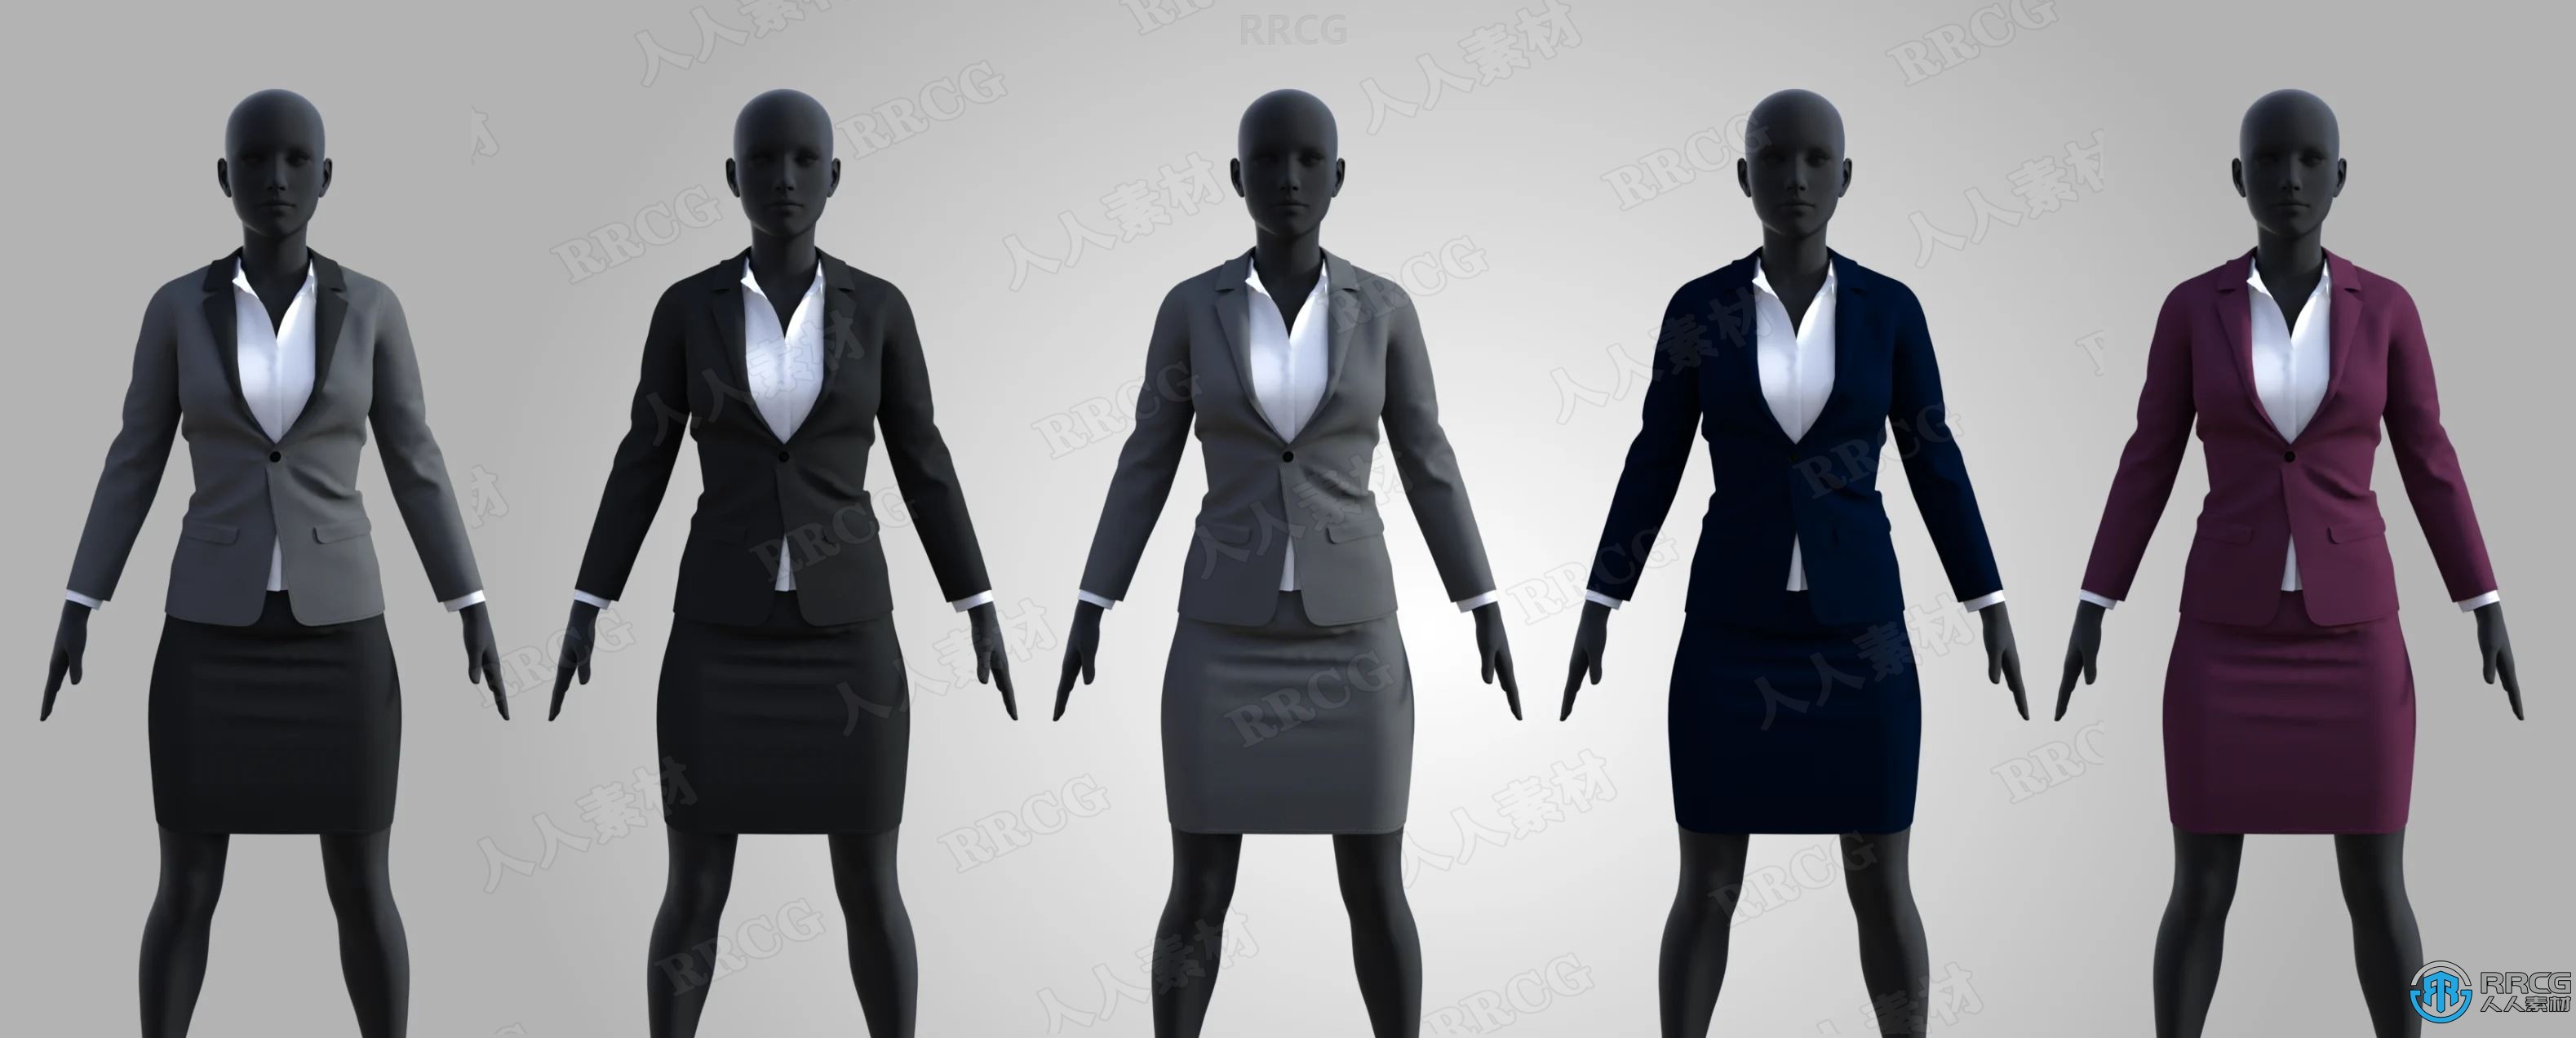 女性律师西服正装职业服饰套装3D模型合集